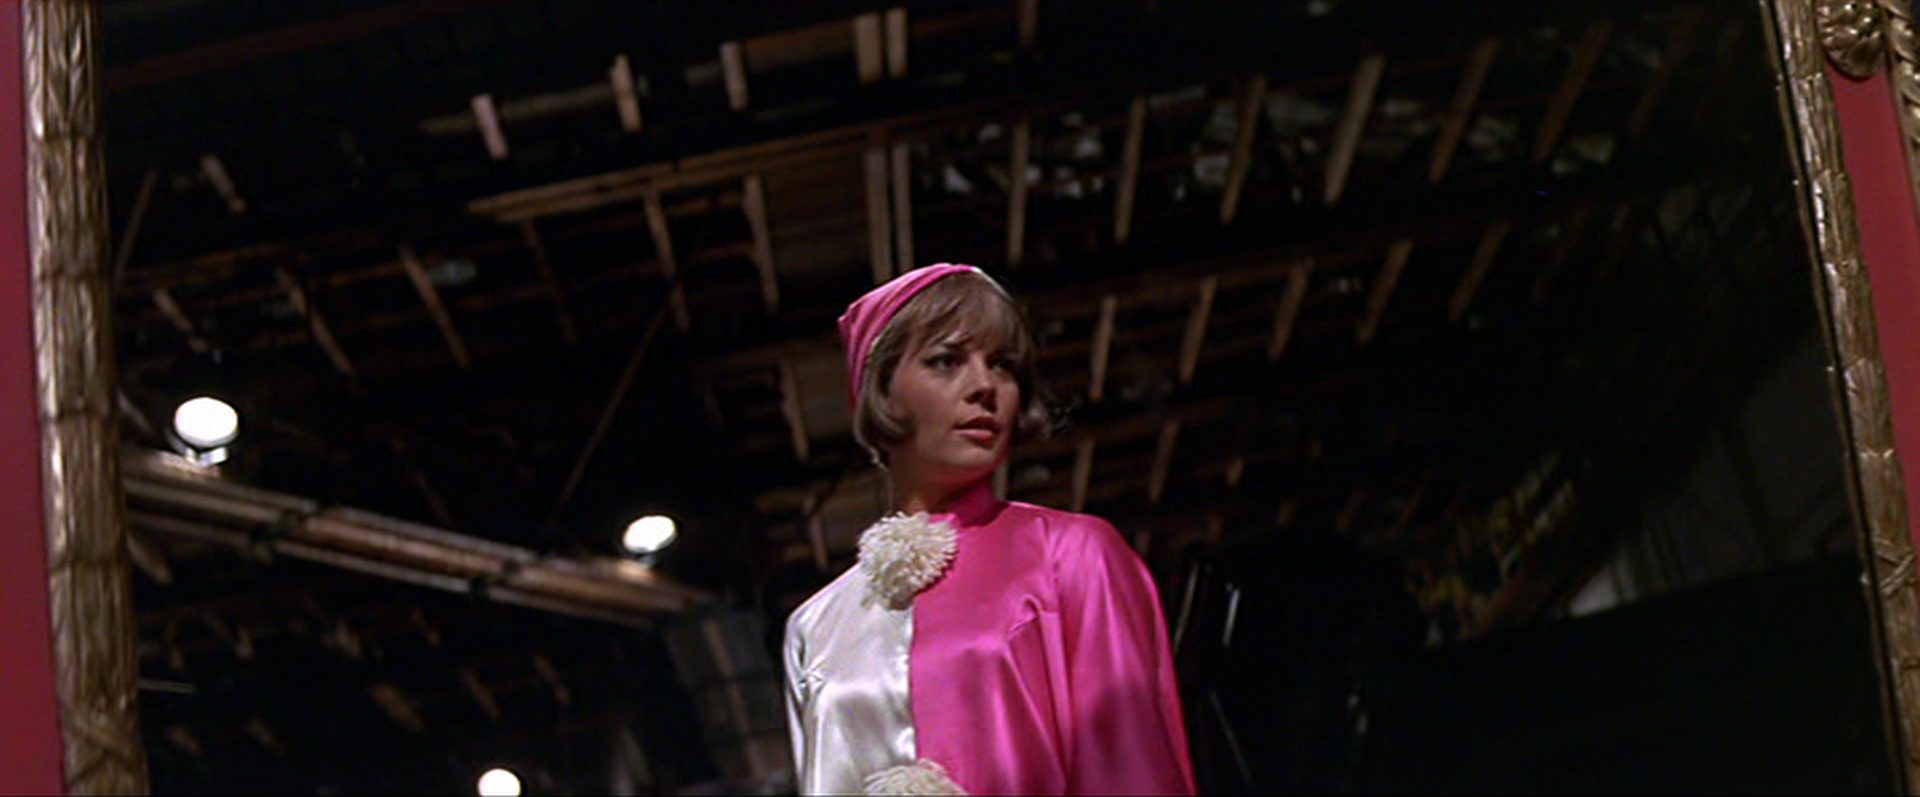 Natalie Wood als kostümierter Hollywoodstar Daisy Clover bei Dreharbeiten im Dunkel einer Soundstage.